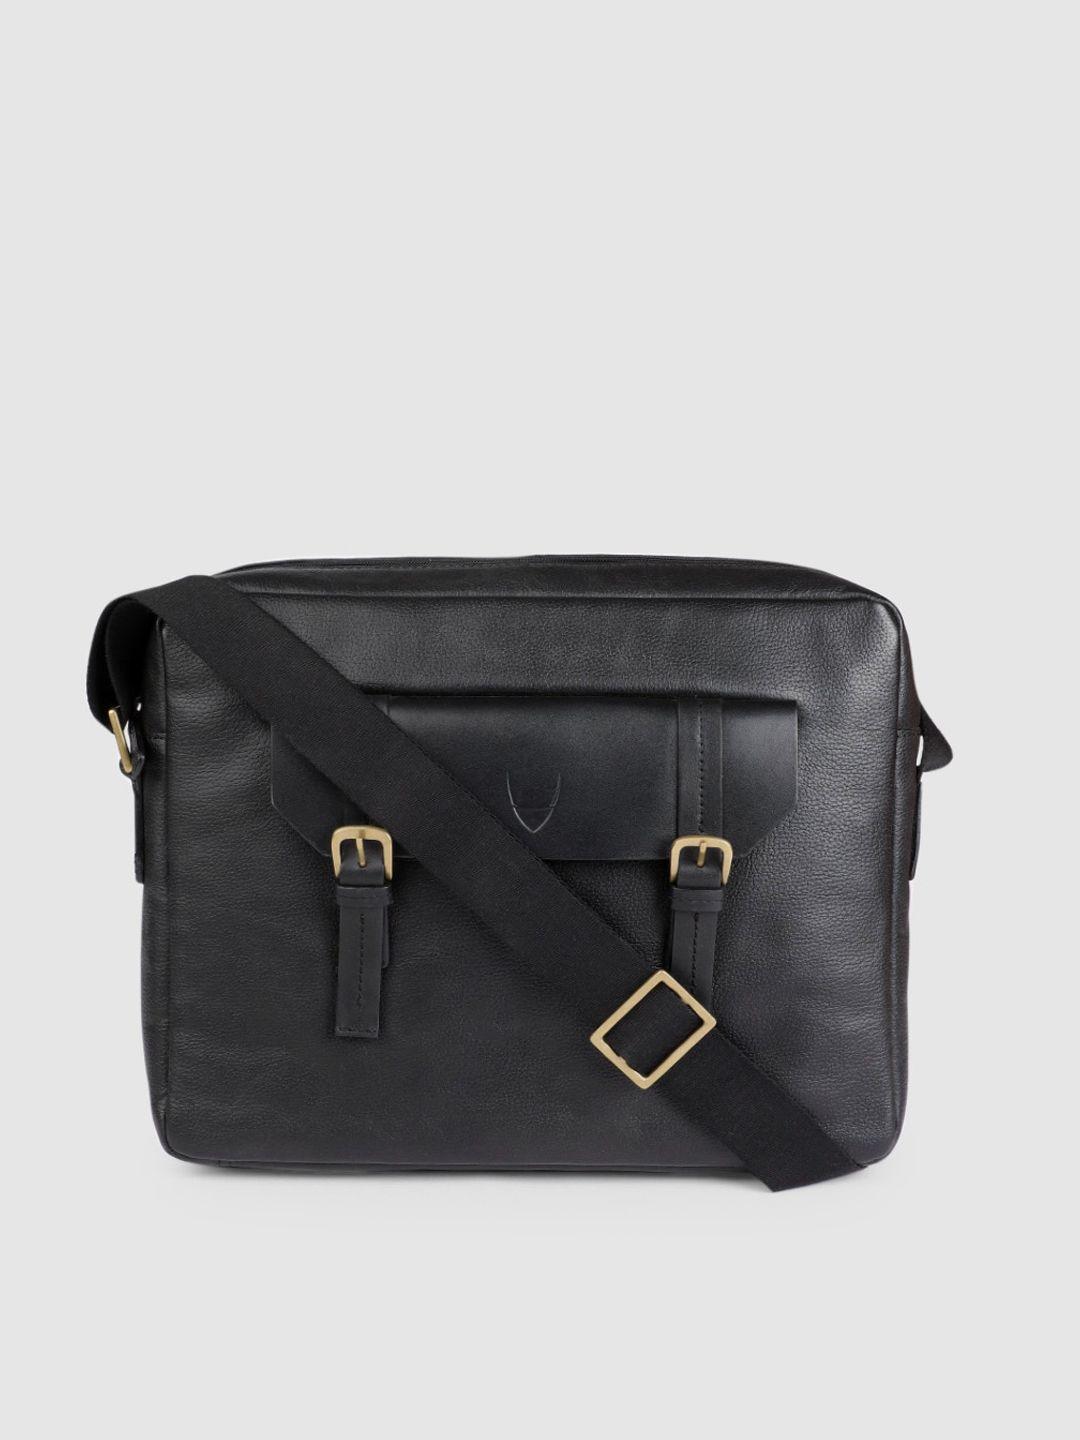 hidesign men black solid leather laptop bag